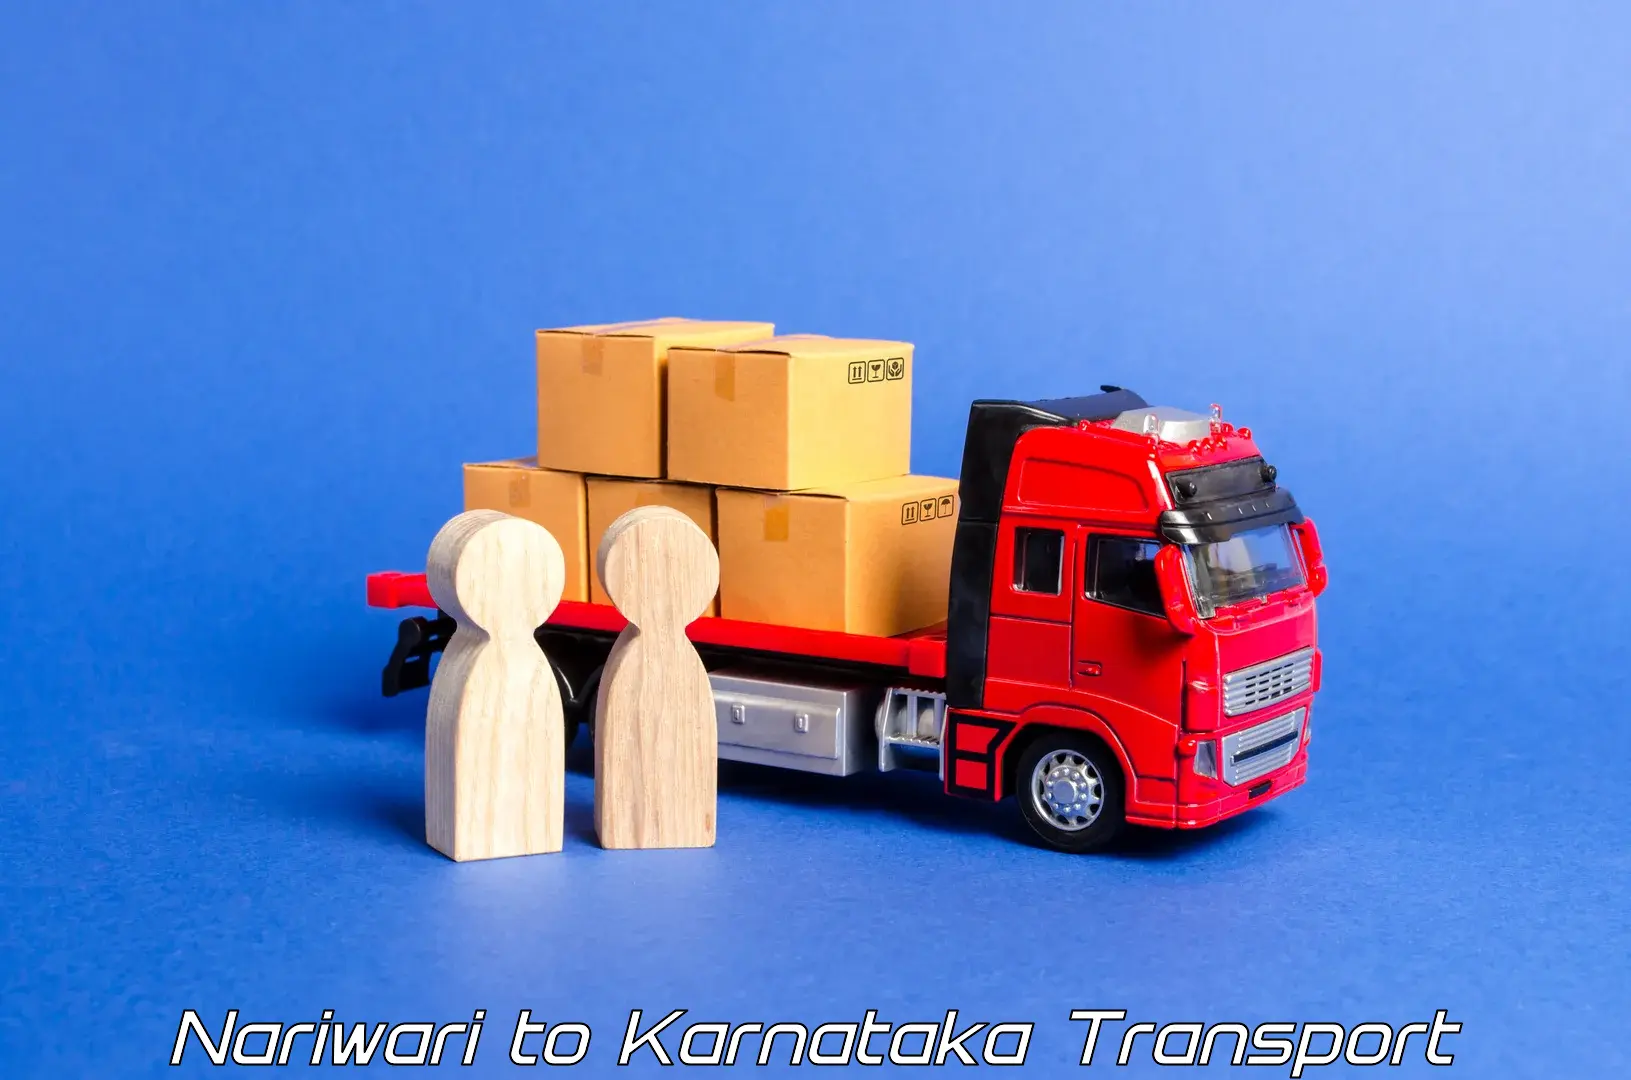 Daily transport service Nariwari to Karnataka